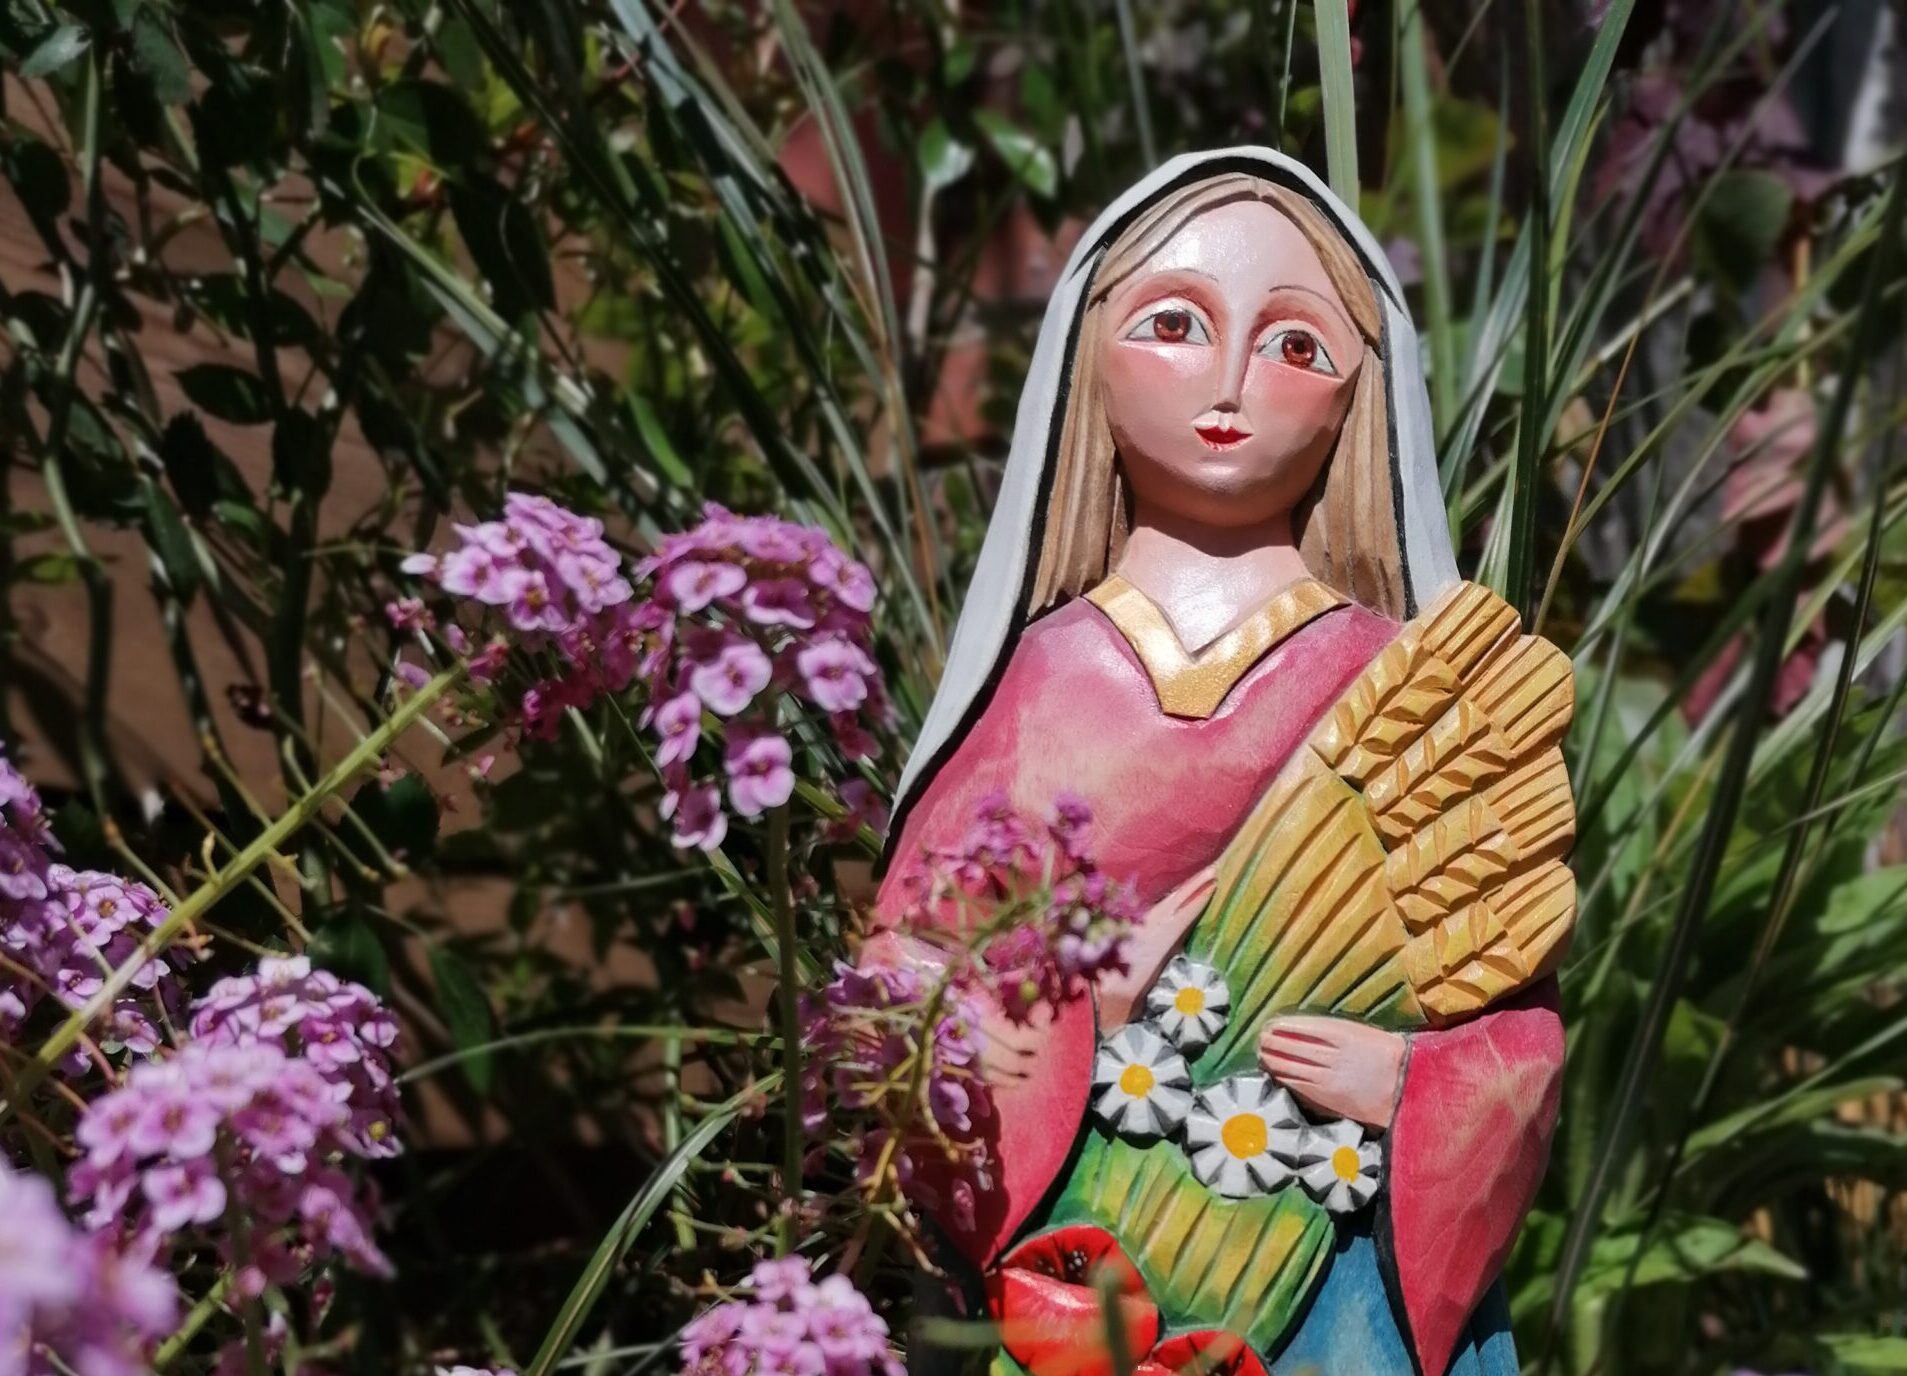 Drewniana rzeźba ukazująca Matkę Boską trzymającą kłosy zbóż i kwiaty. Rzeźba ustawiona wśród roślin i delikatnych, różowych kwiatostanach.